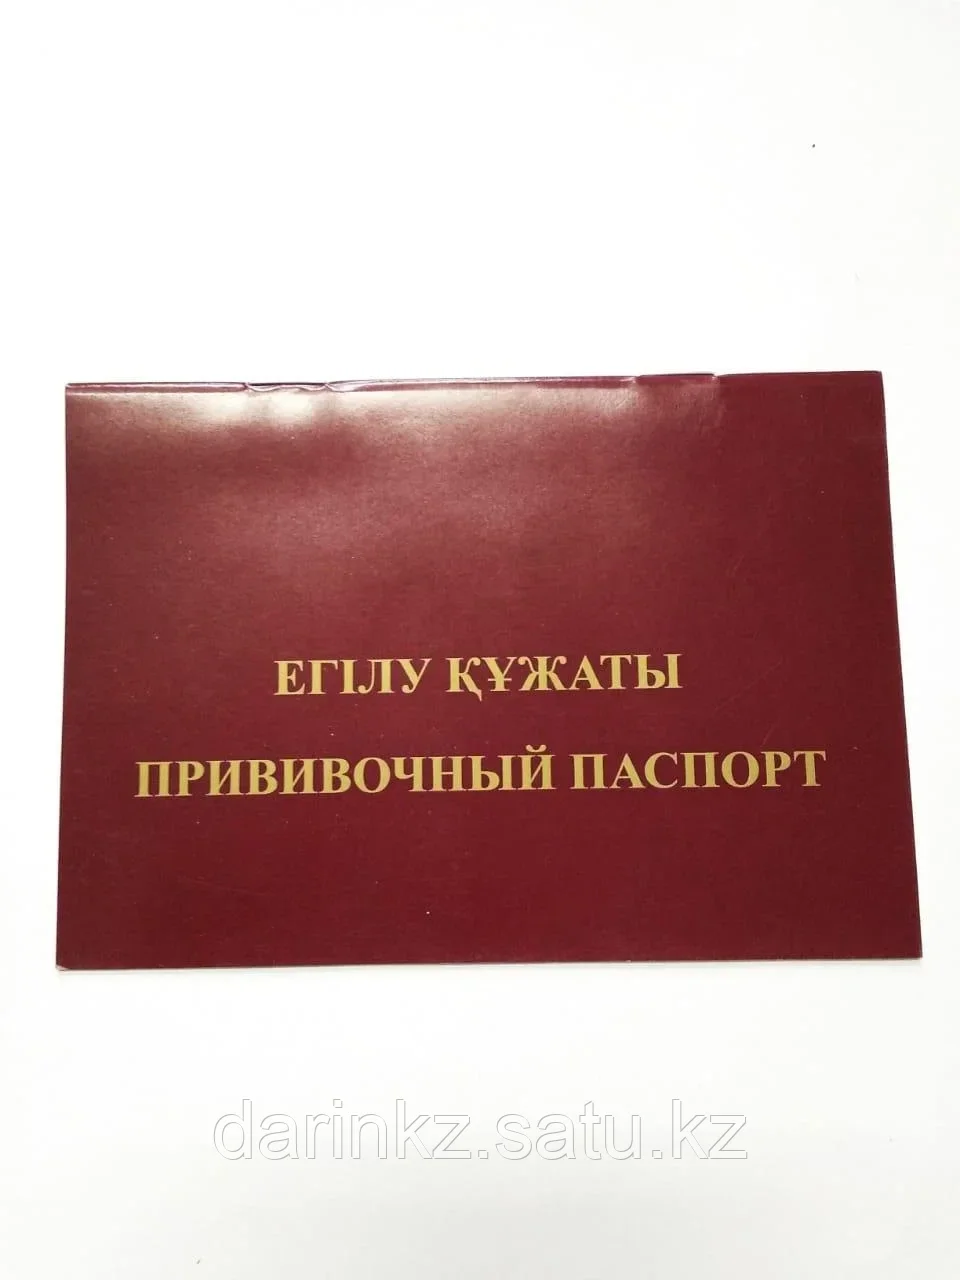 Прививочный паспорт